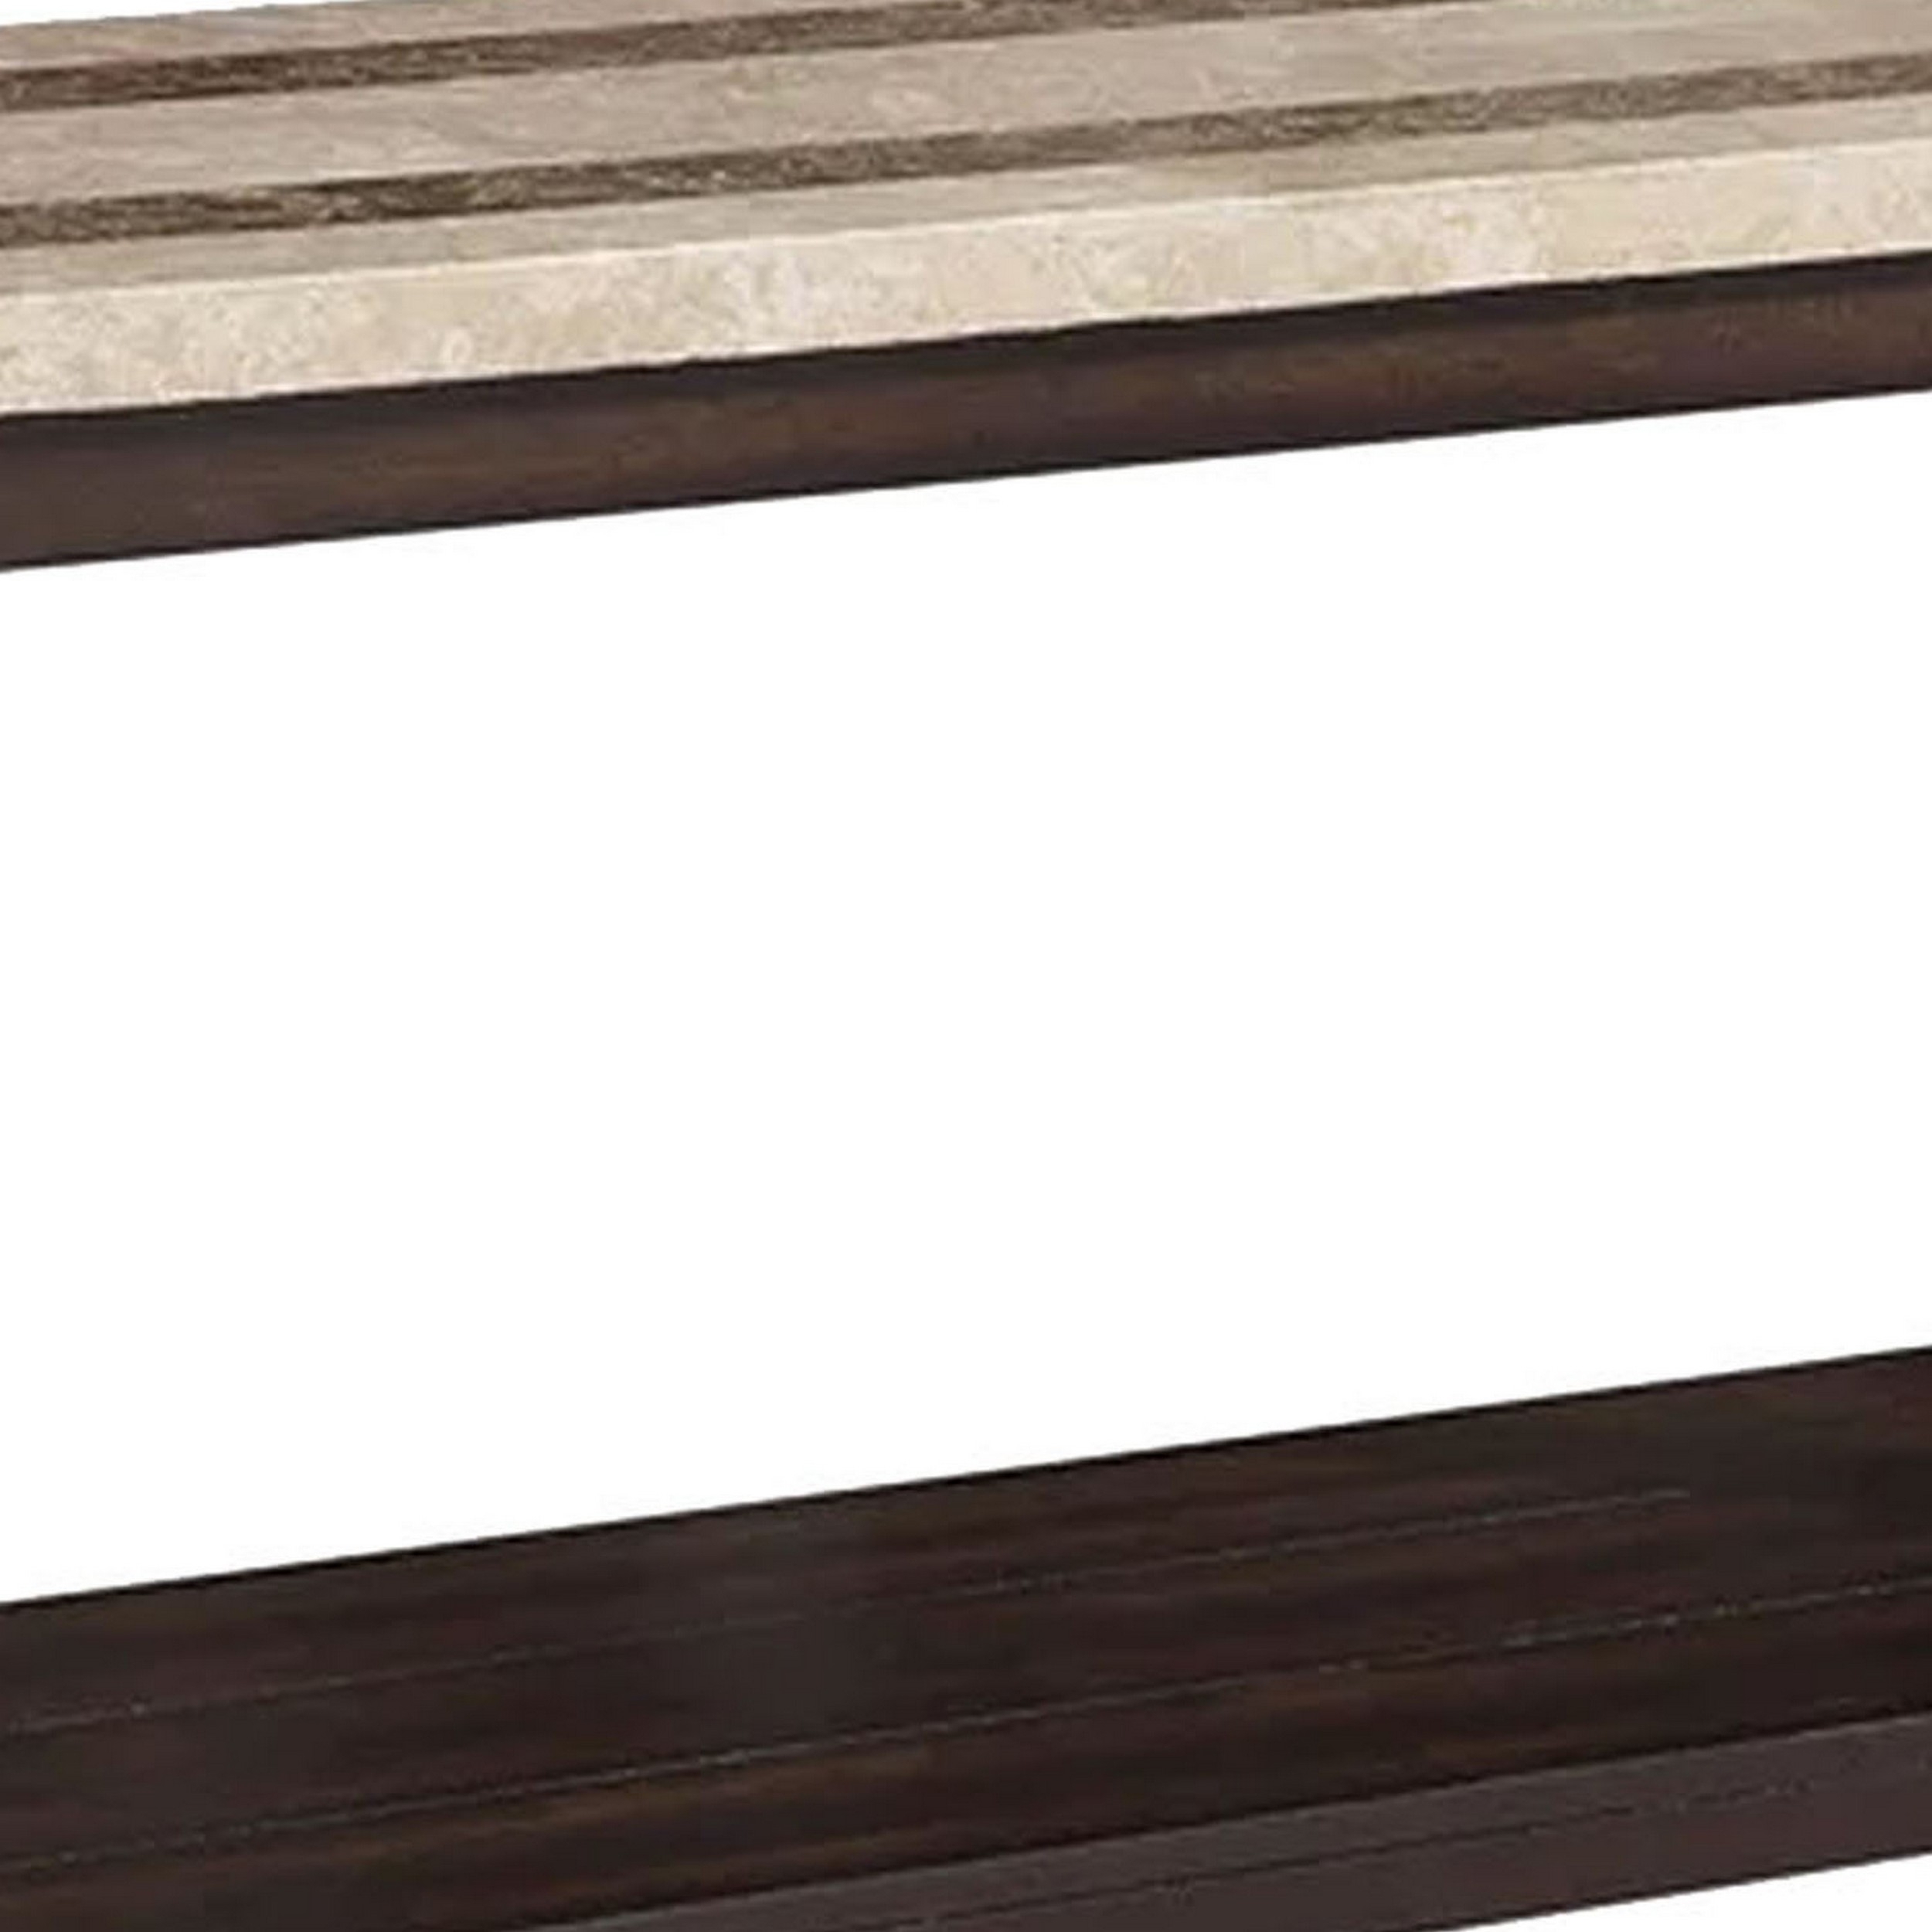 Cora 48 Inch Console Sofa Table, Faux Marble, Block Legs, Espresso Brown- Saltoro Sherpi